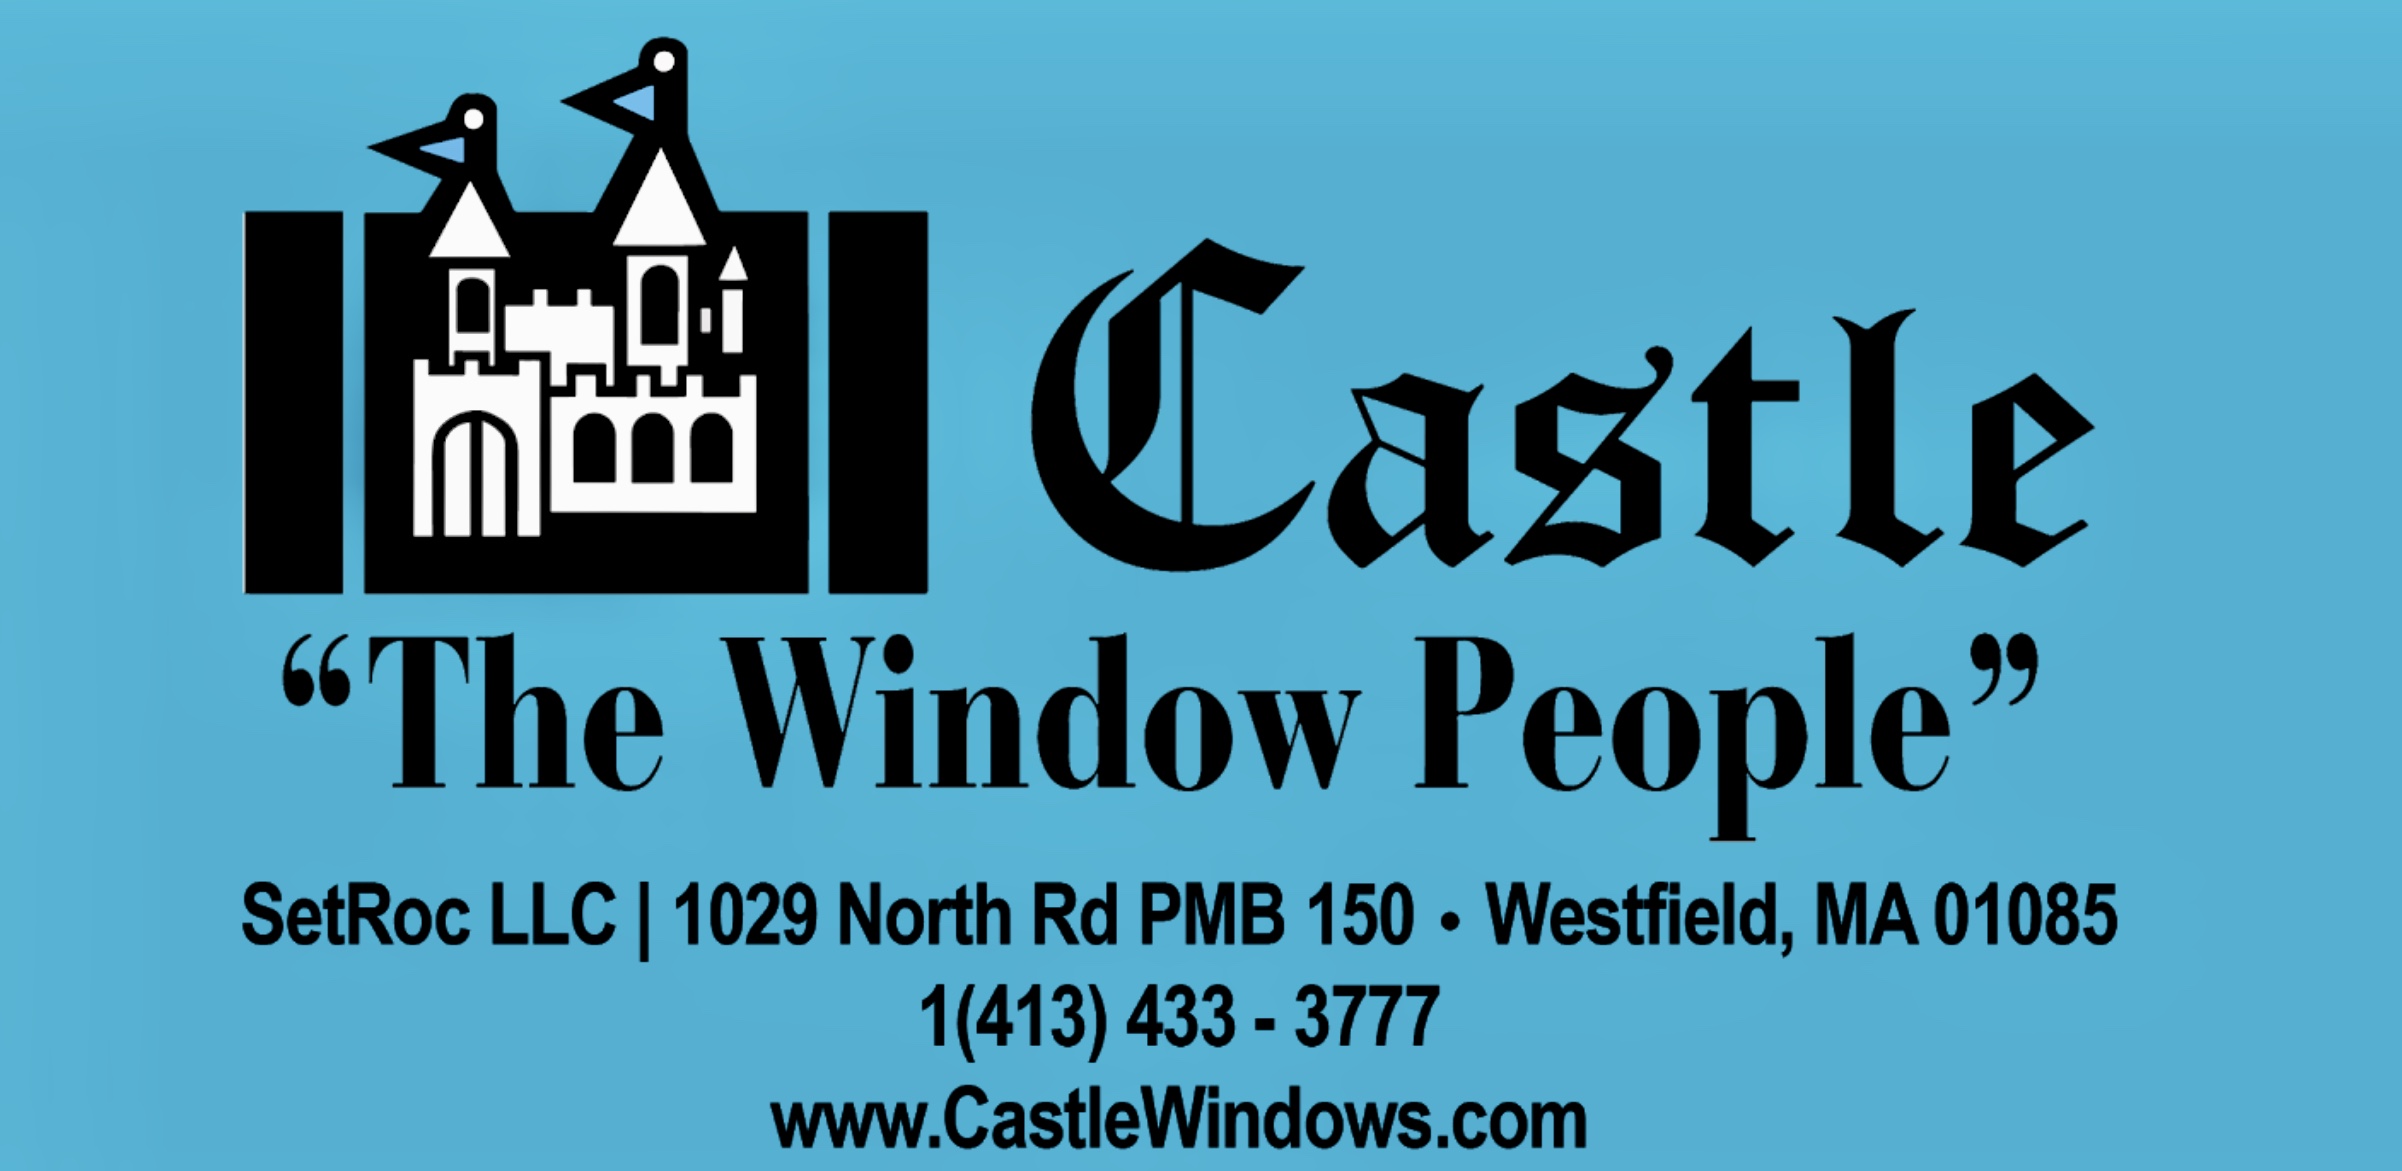 Castle, The Window People of MA Logo